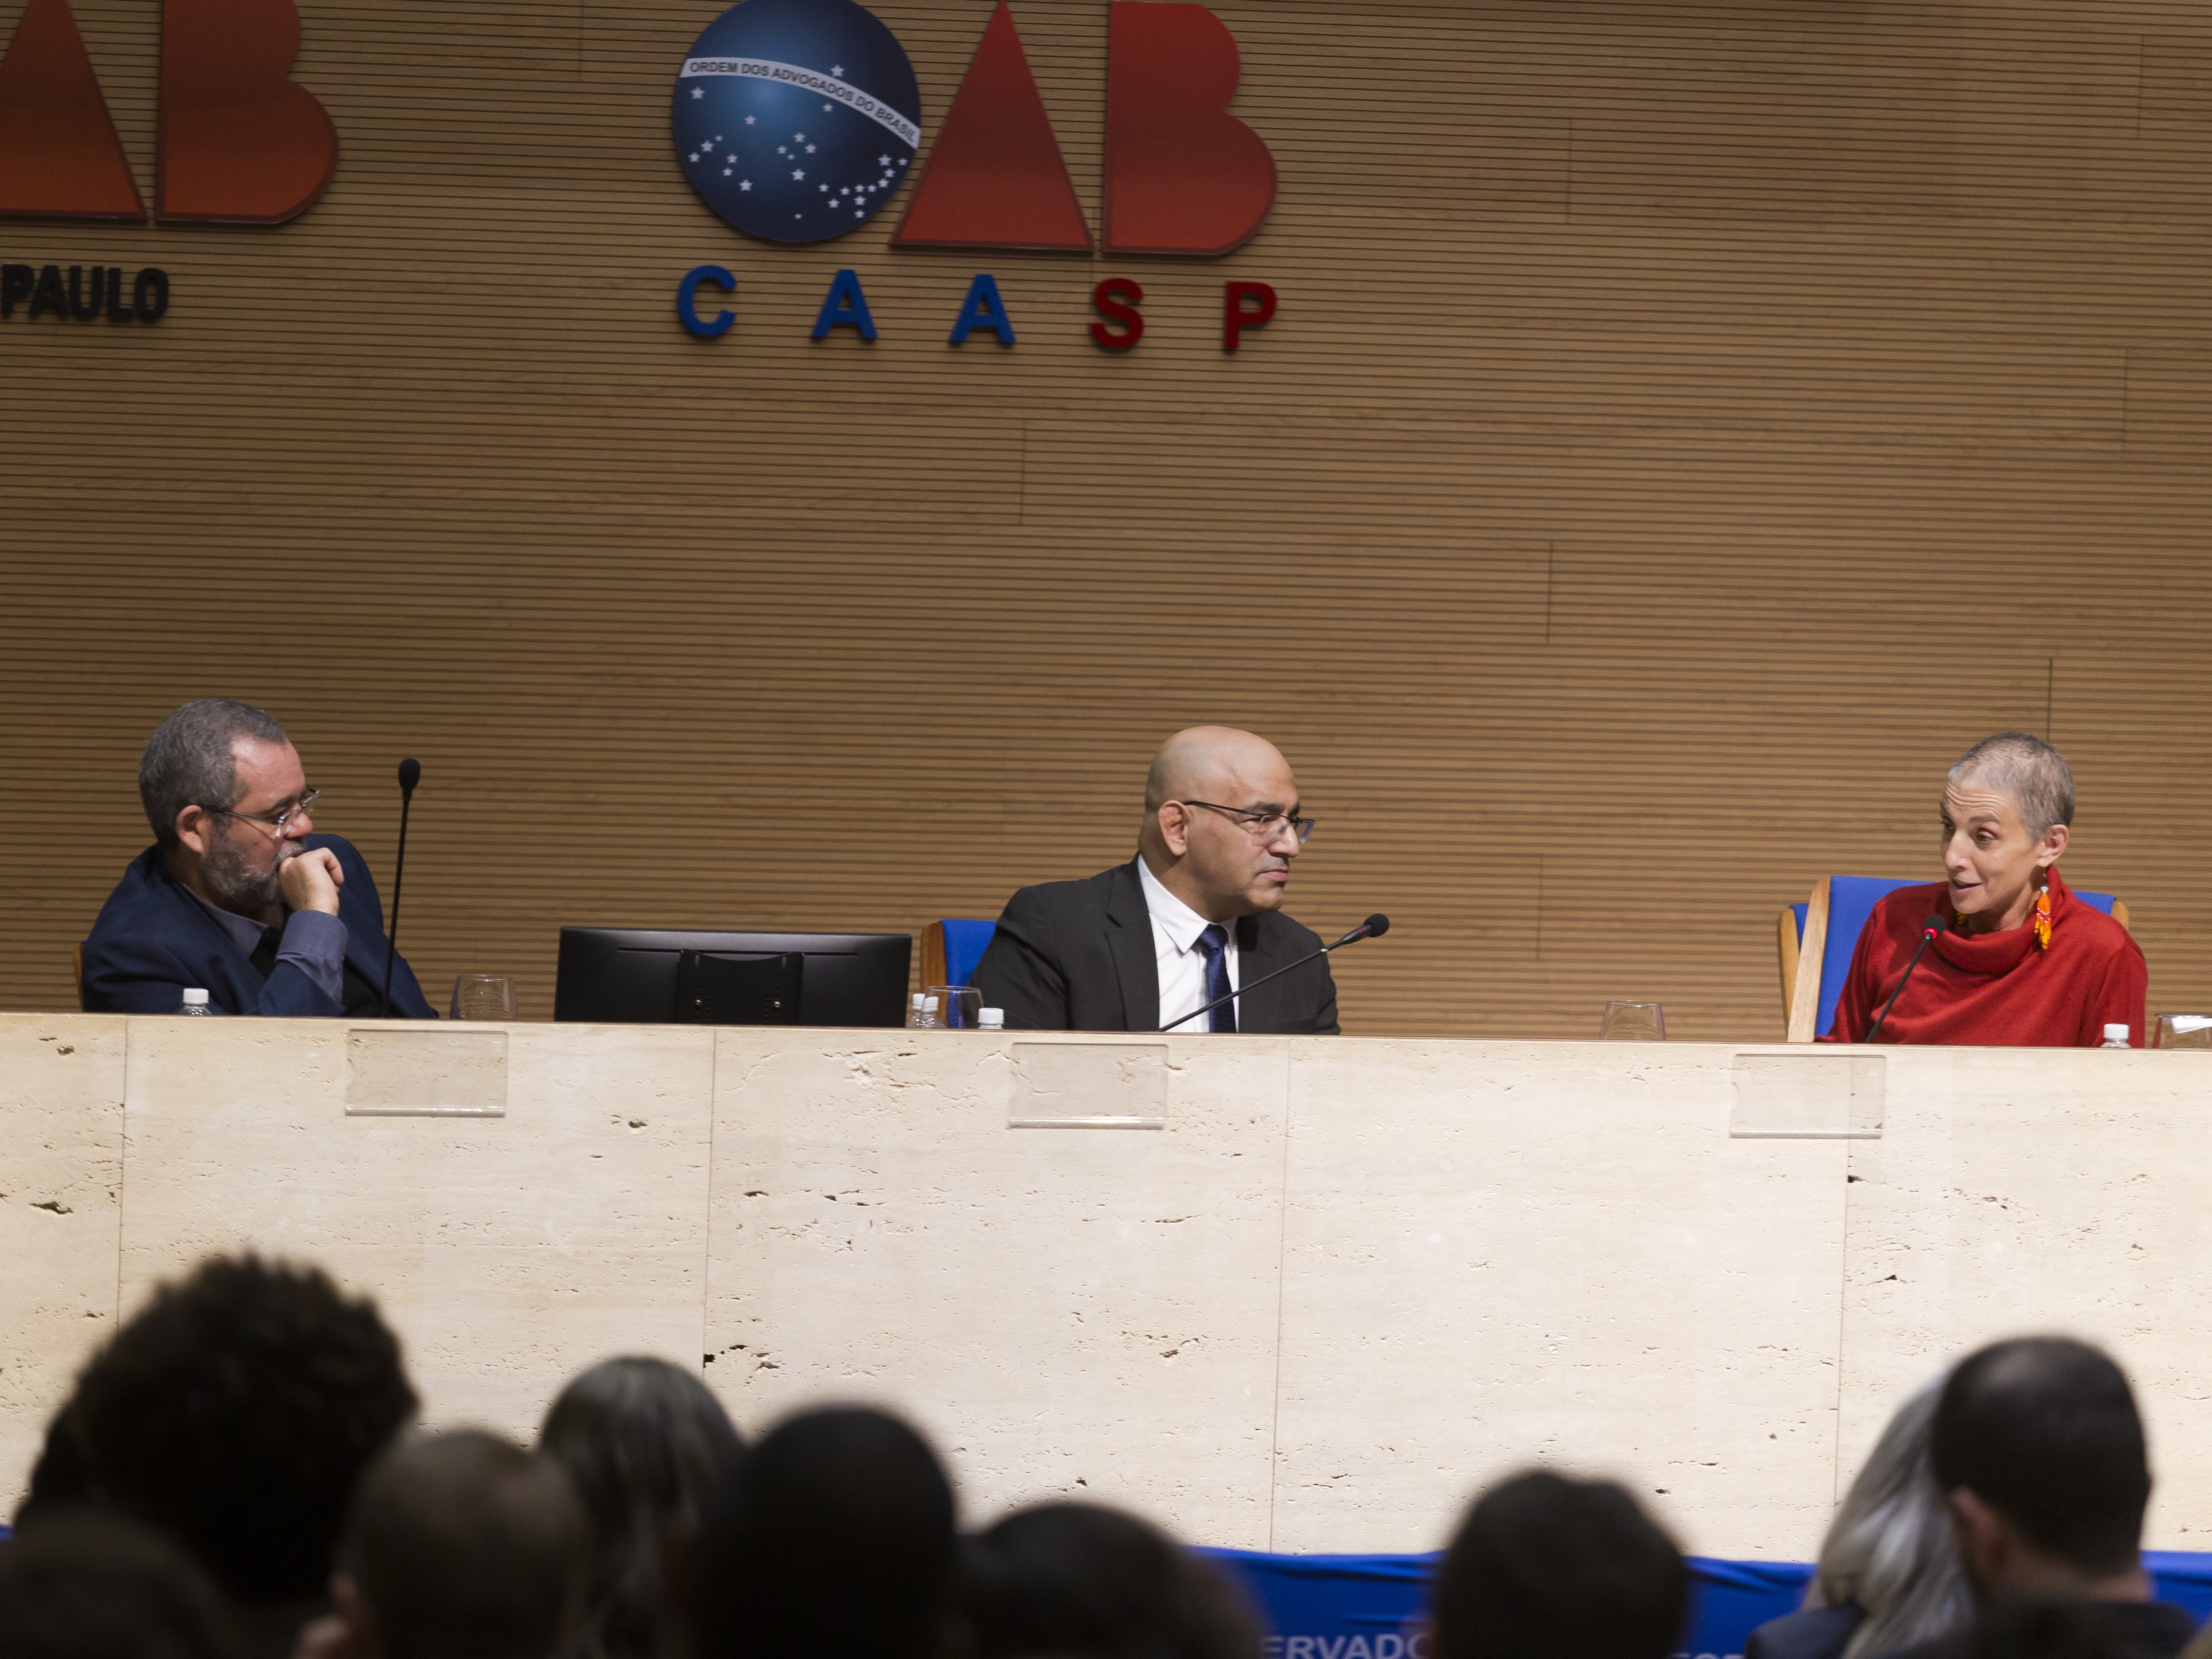 Grupo de três pessoas sentadas atrás de um balcão, a frente de uma parede com os símbolos "OAB São Paulo" e "OAB CAASP". Uma plateia assiste a fala das três pessoas.